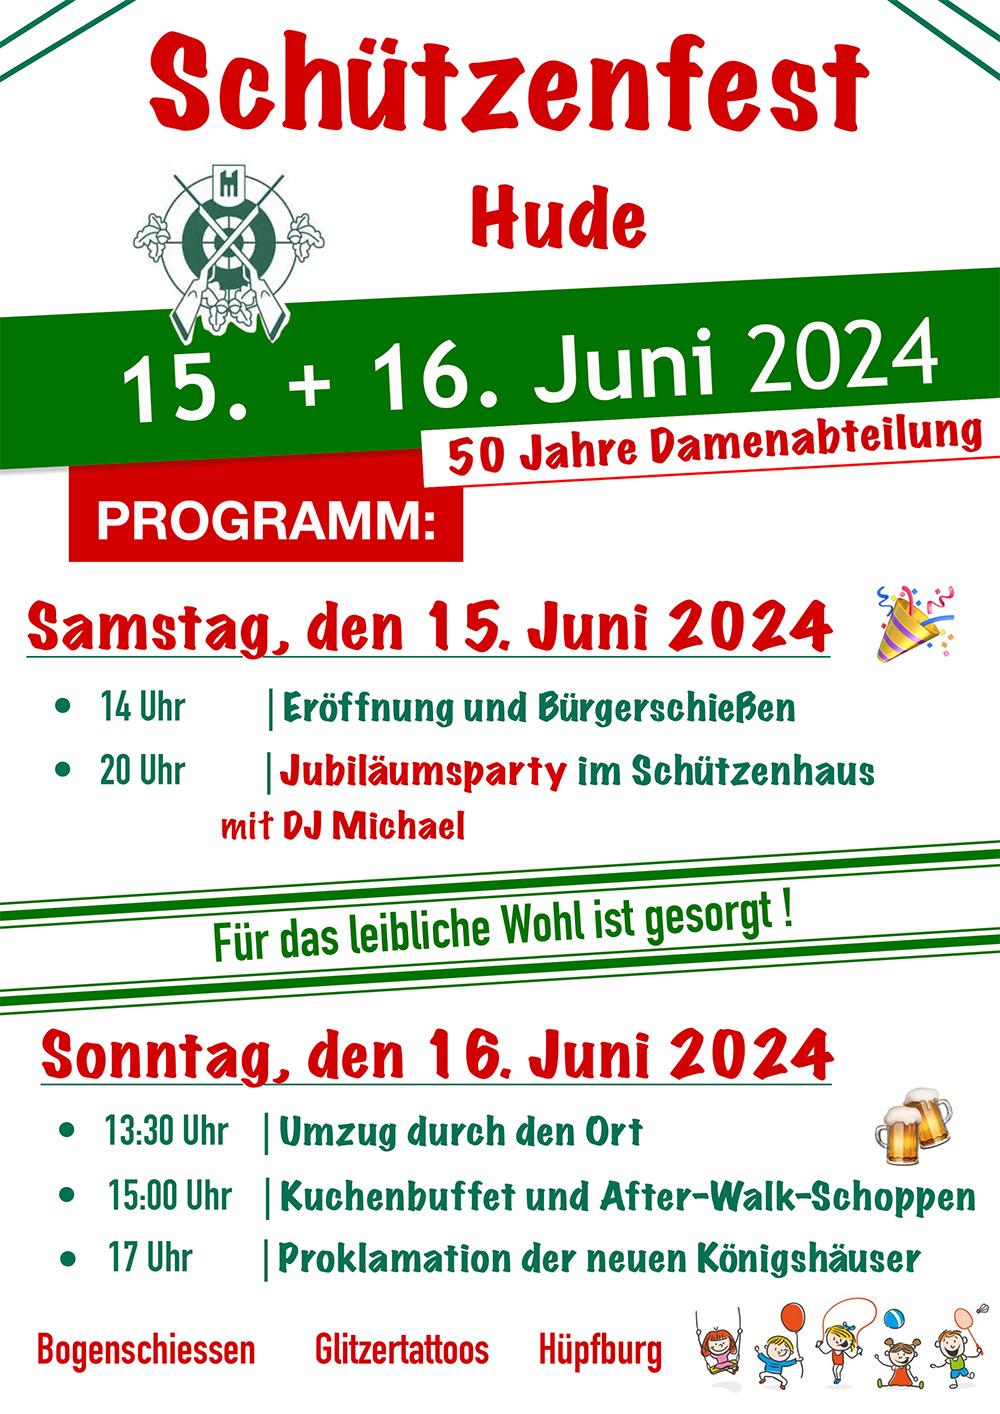 Hude-Schuetzenfest-2024